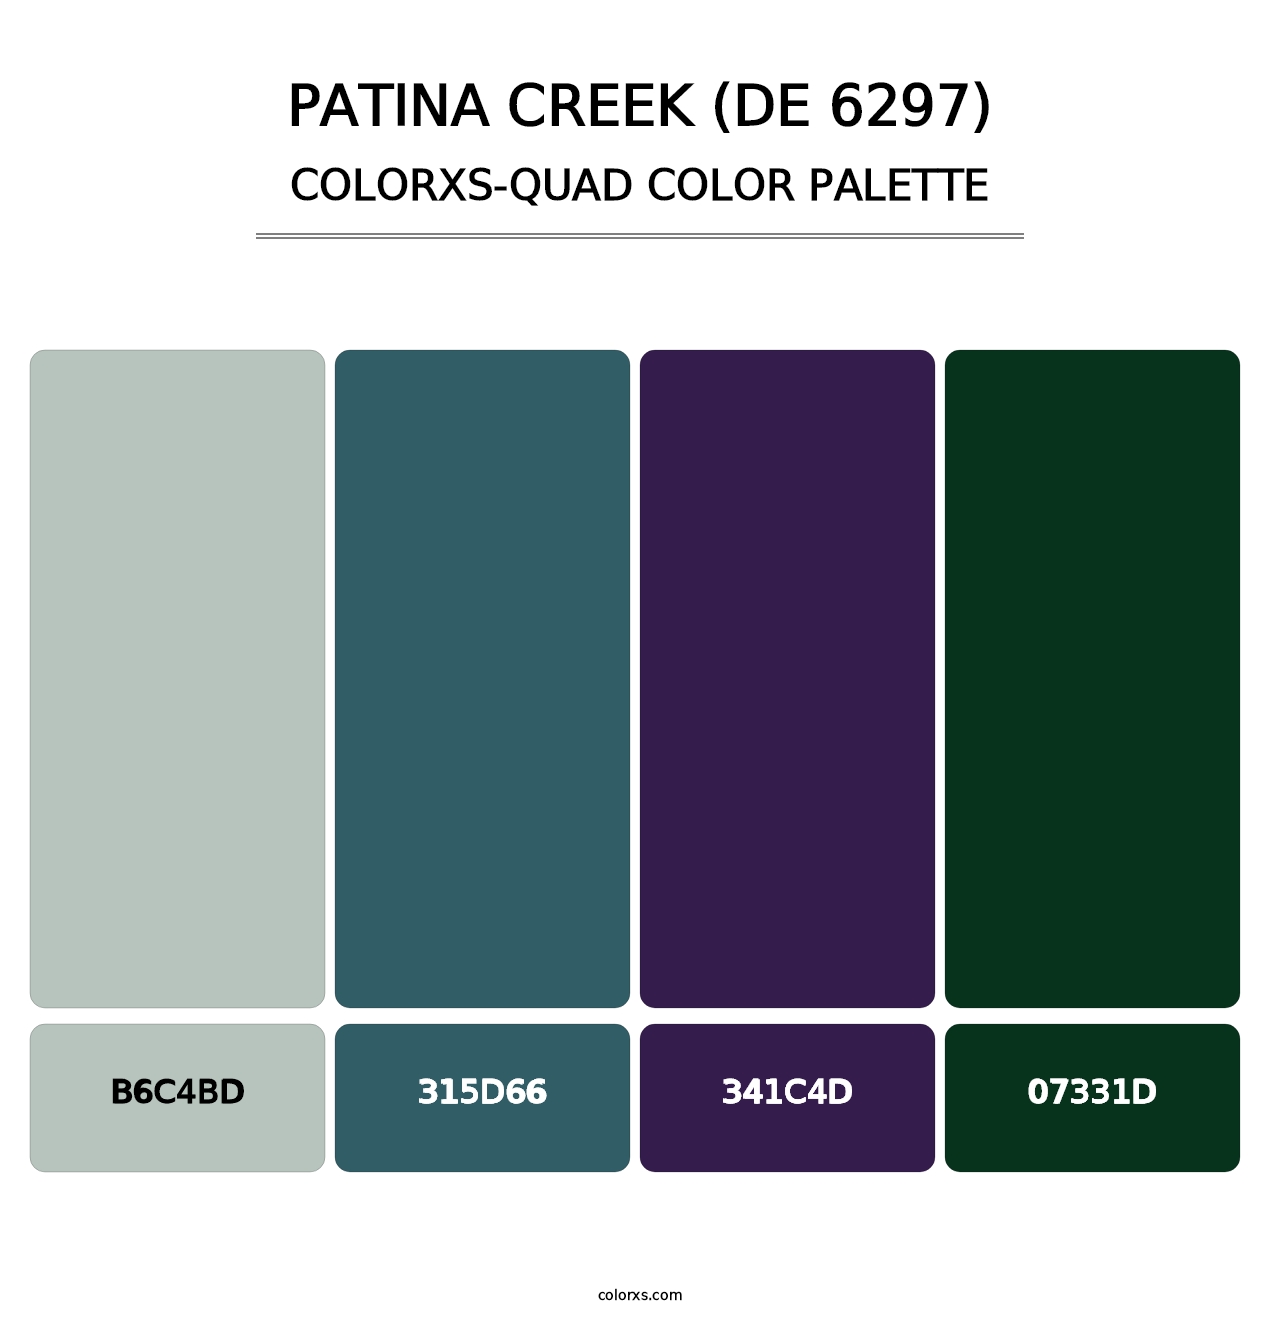 Patina Creek (DE 6297) - Colorxs Quad Palette